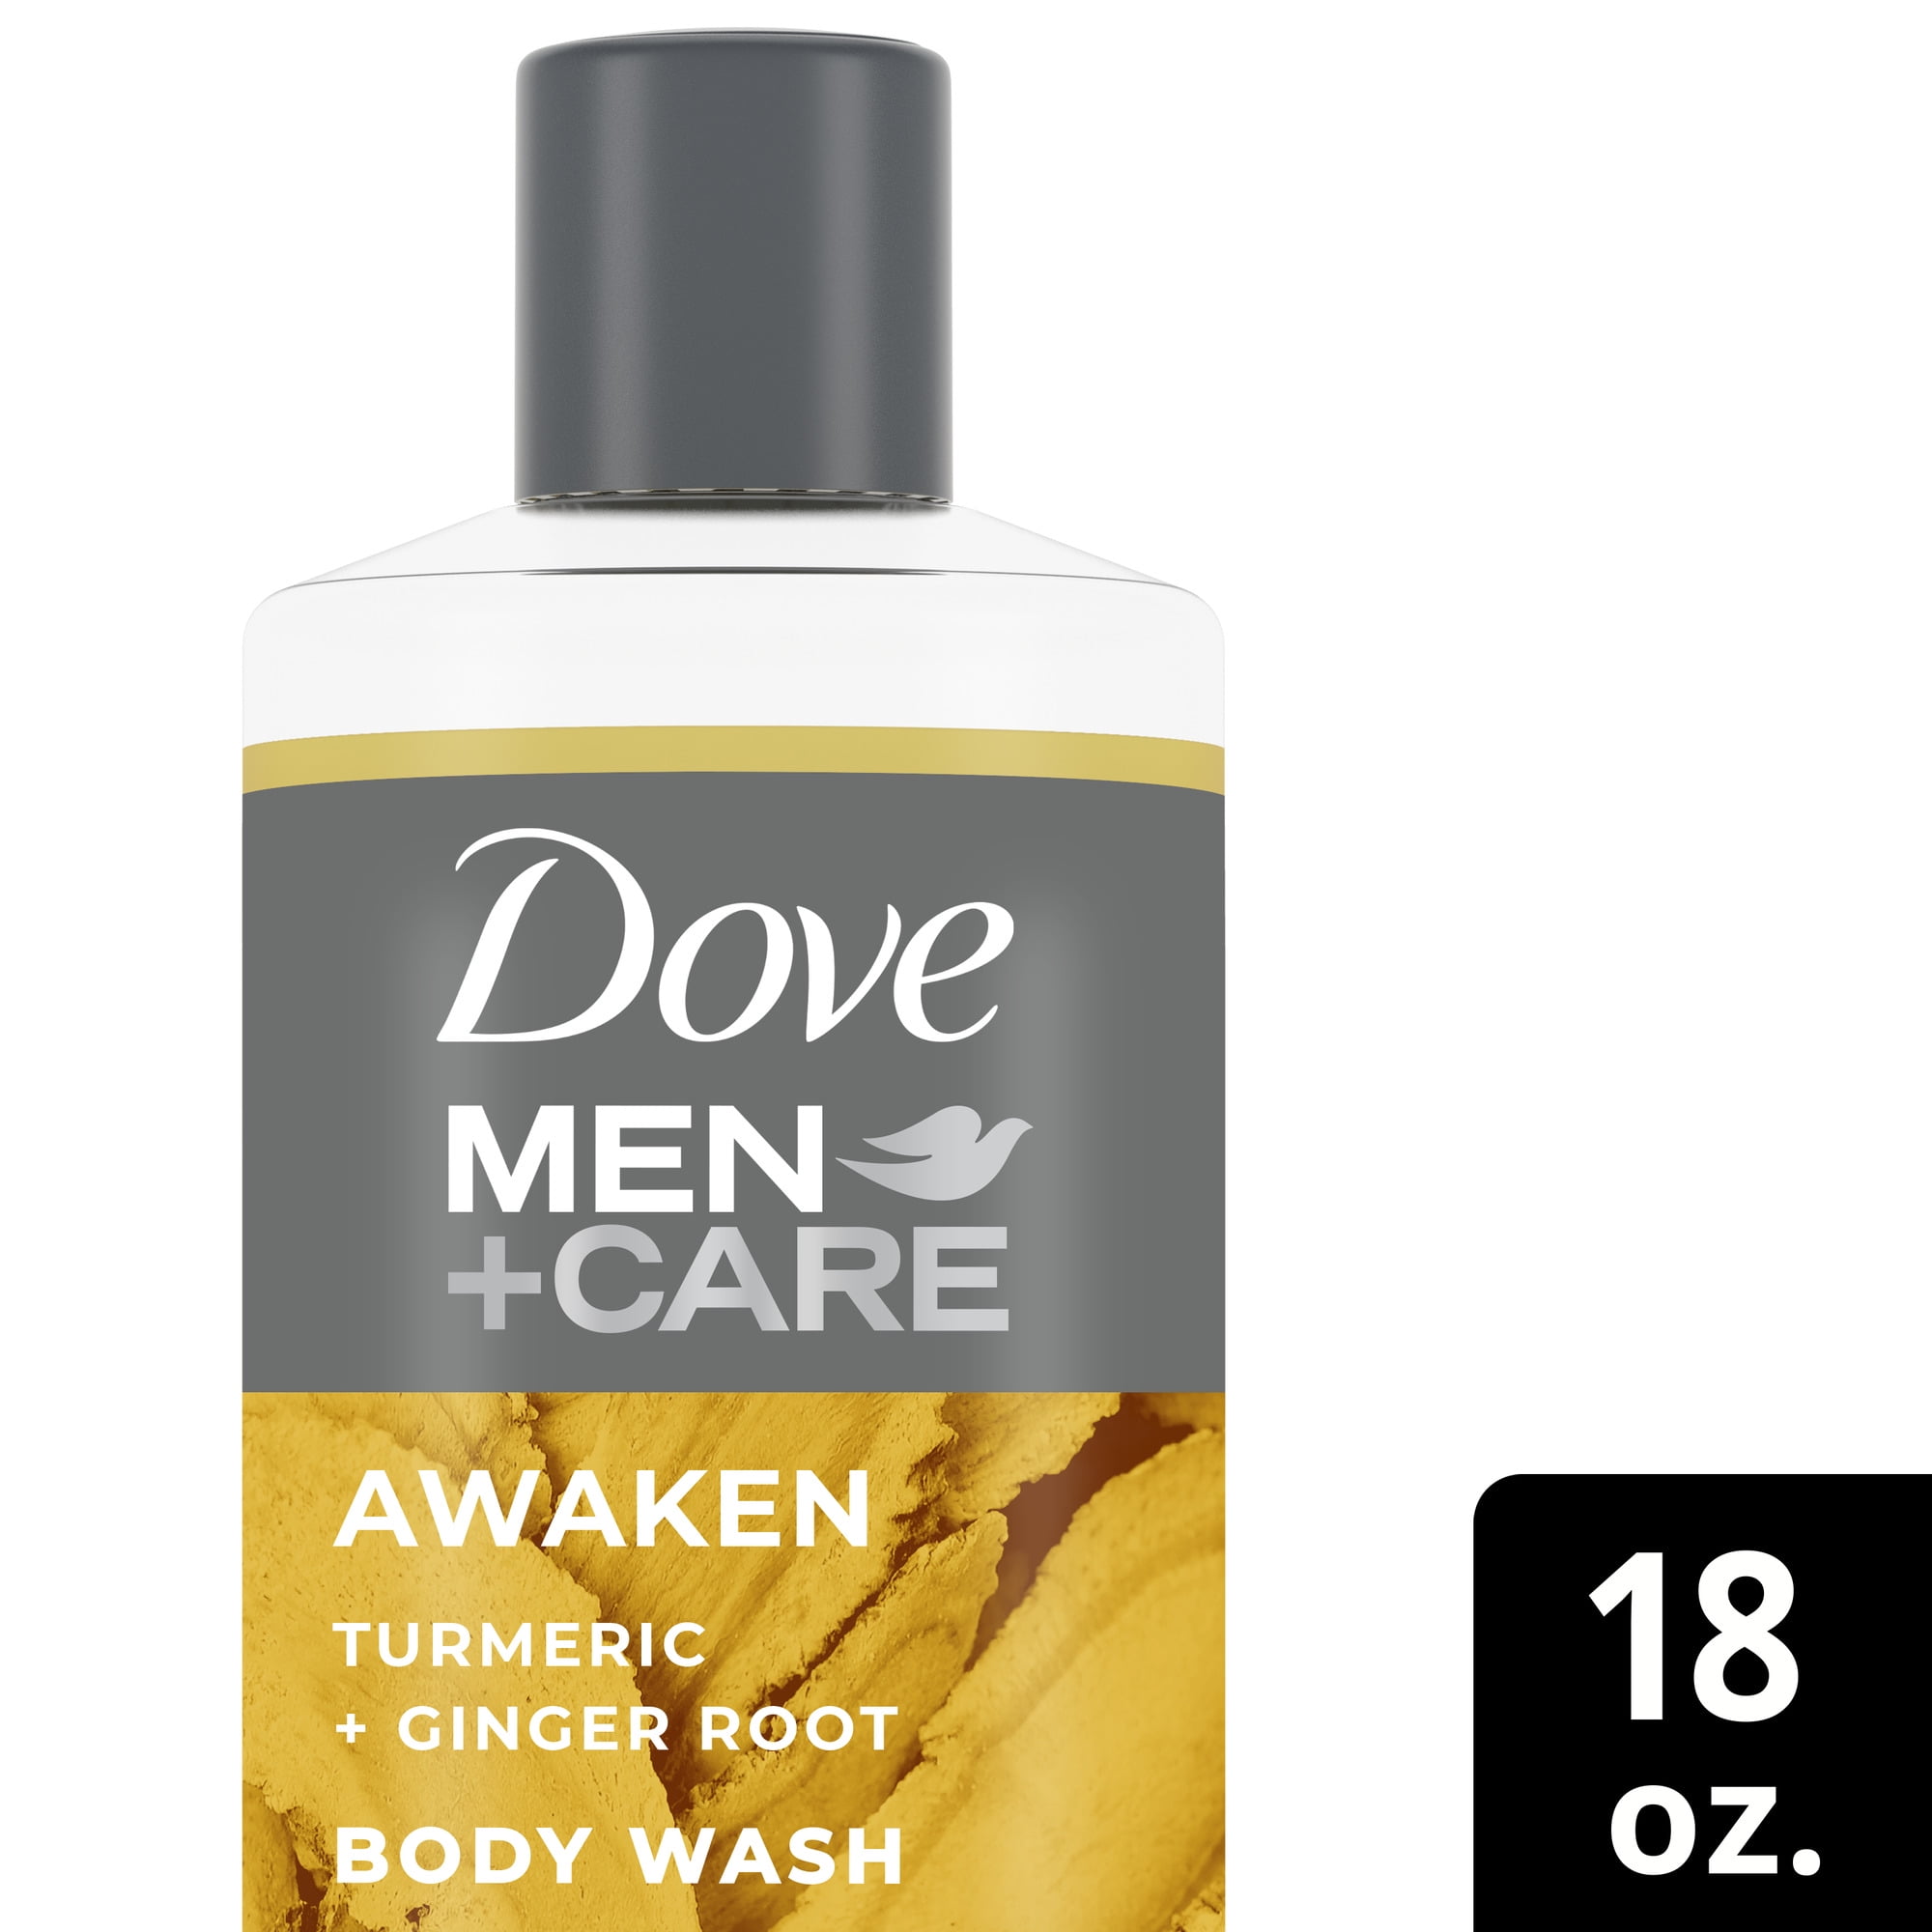 Dove Men+Care Liquid Face & Body Wash for Men Awaken Turmeric + Ginger Root, 18 oz